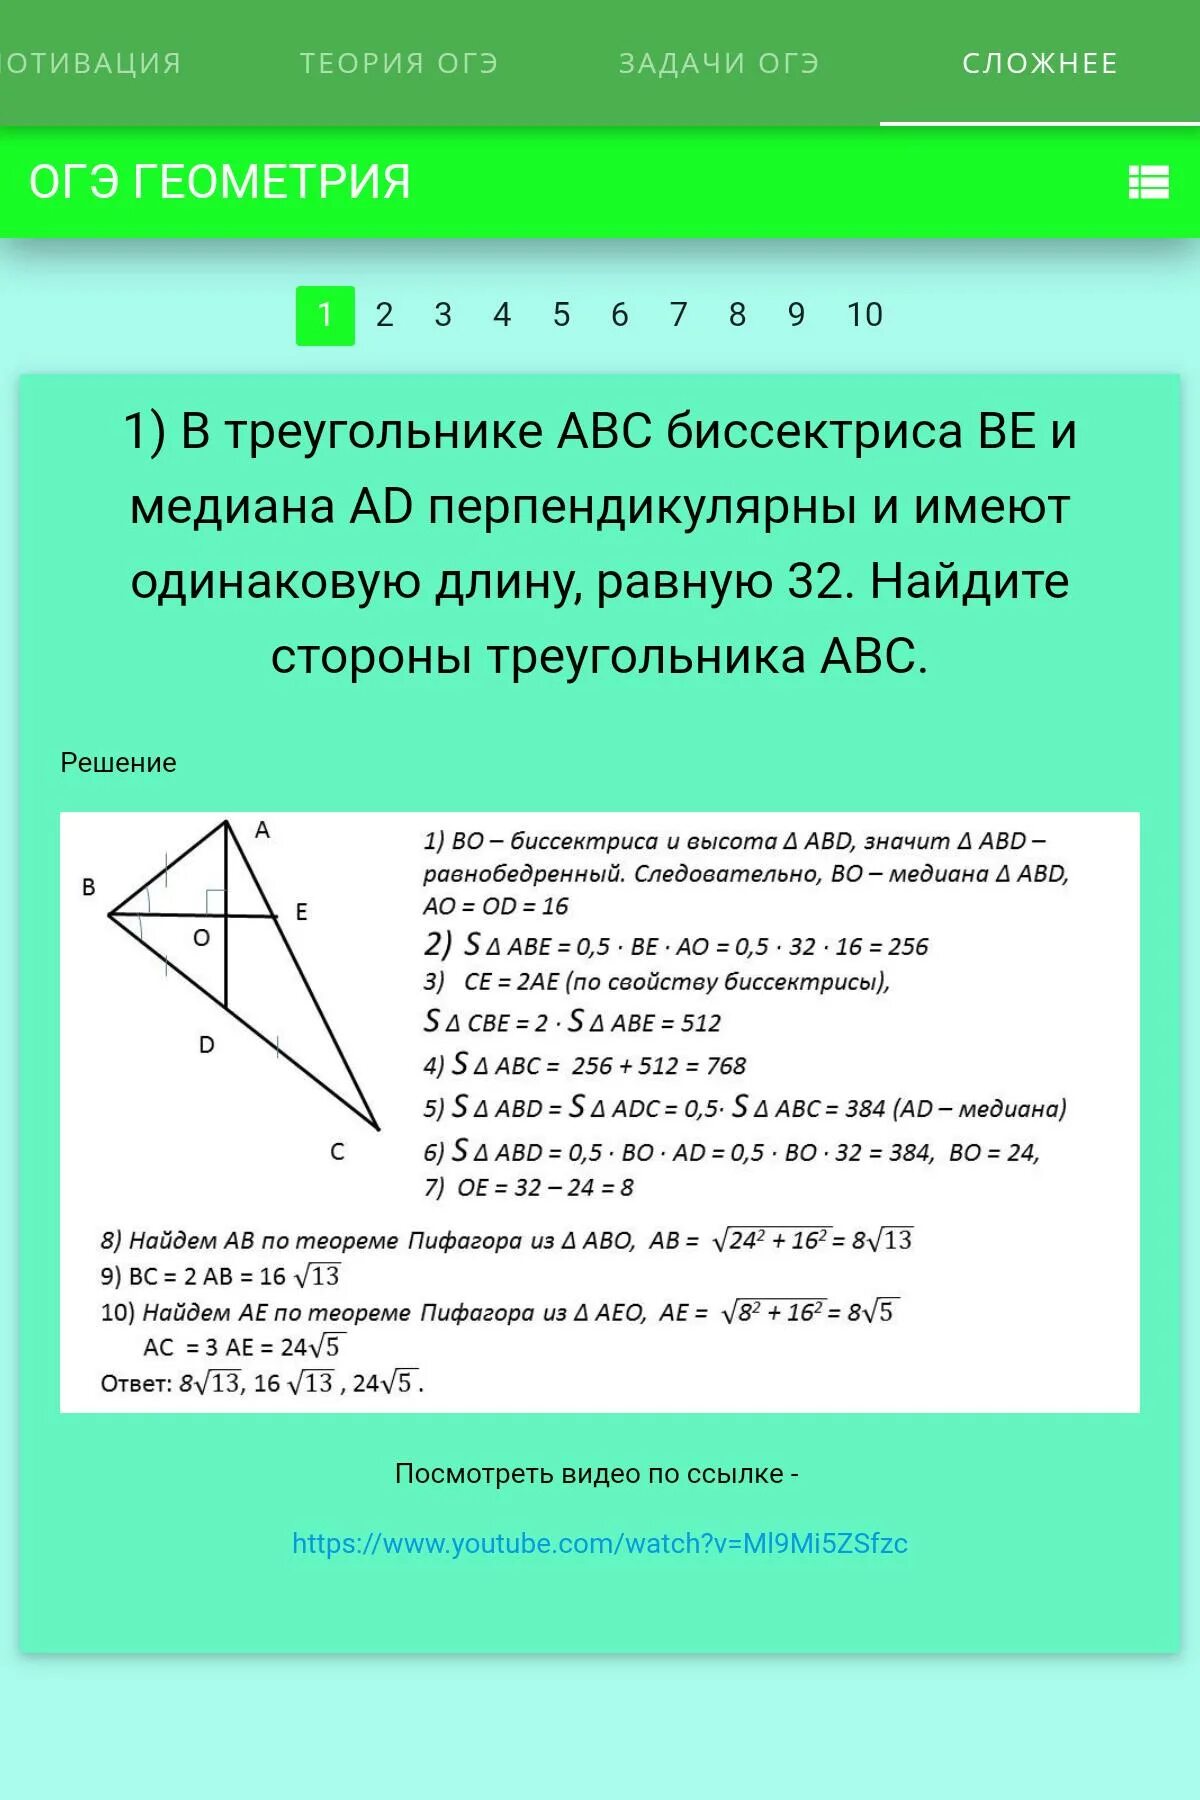 Геометрия огэ 15 19 задание. Геометрия ОГЭ. ОГЭ геометрия треугольники. Карточка ОГЭ геометрия. Функции геометрия ОГЭ.